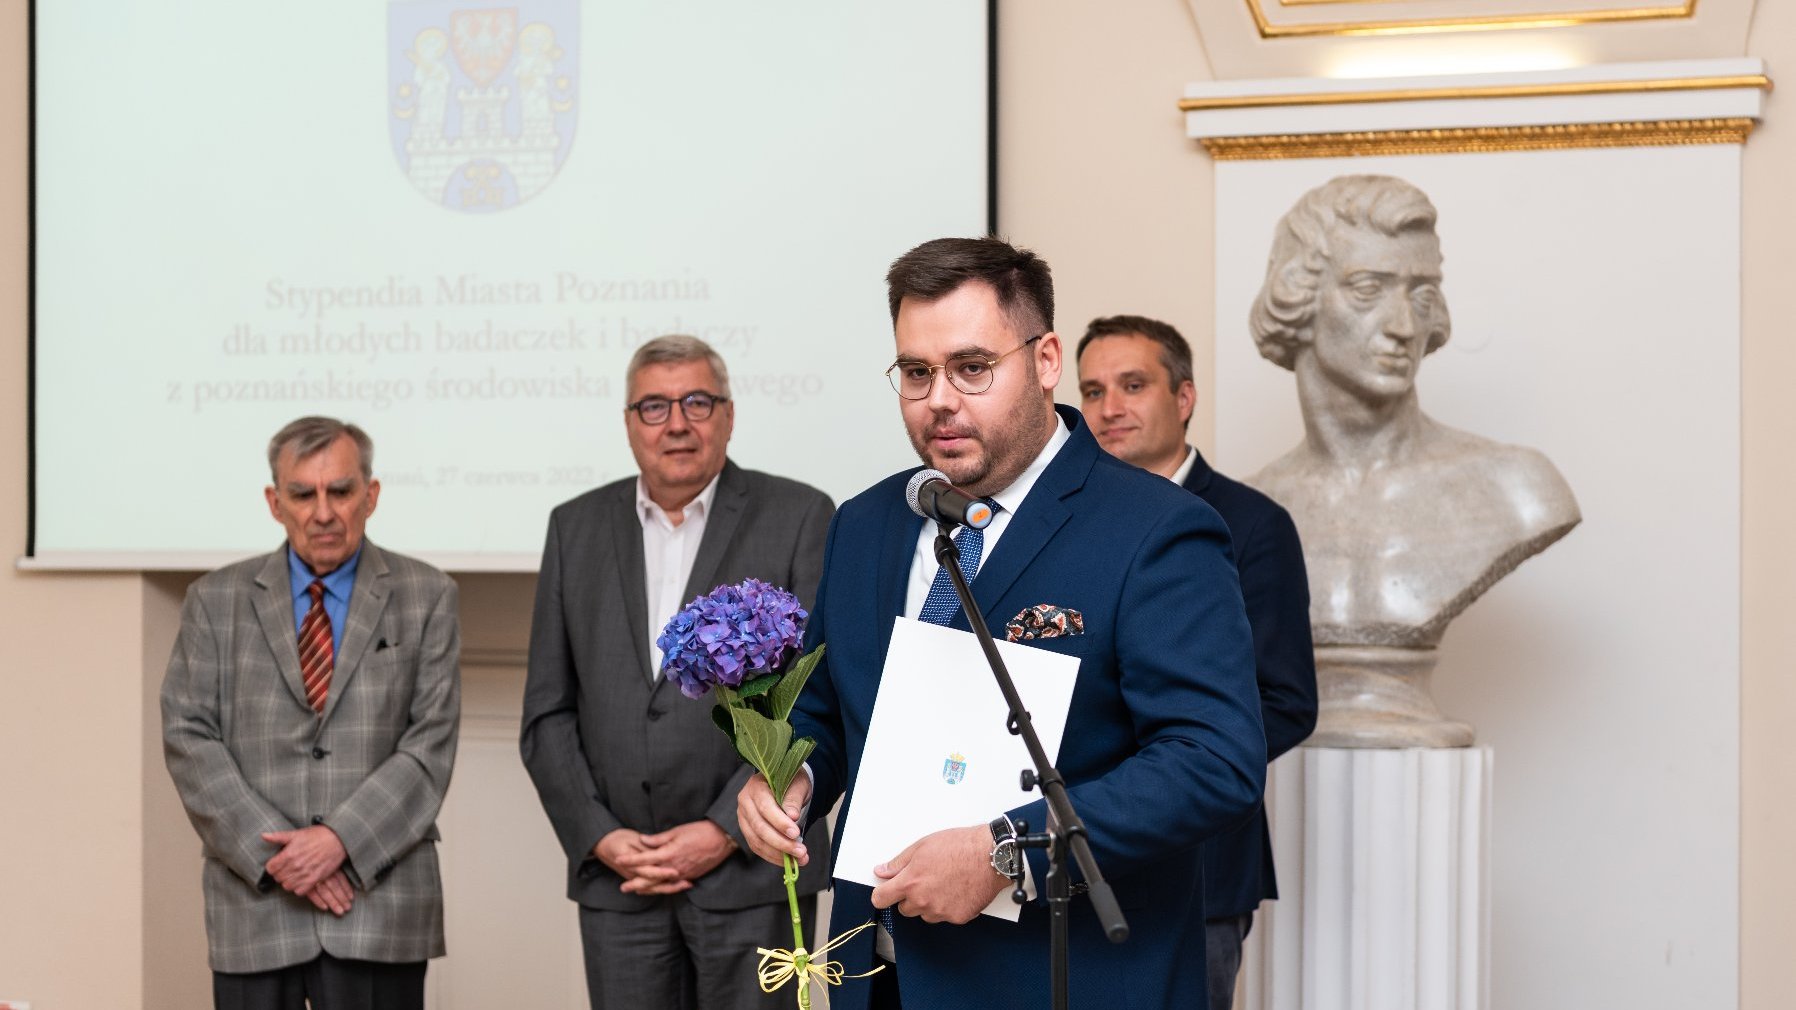 Na zdjęciu stypendysta przy mikrofonie, za nim zastępca prezydenta Poznania, przewodniczący rady miasta i przewodniczący kapituły